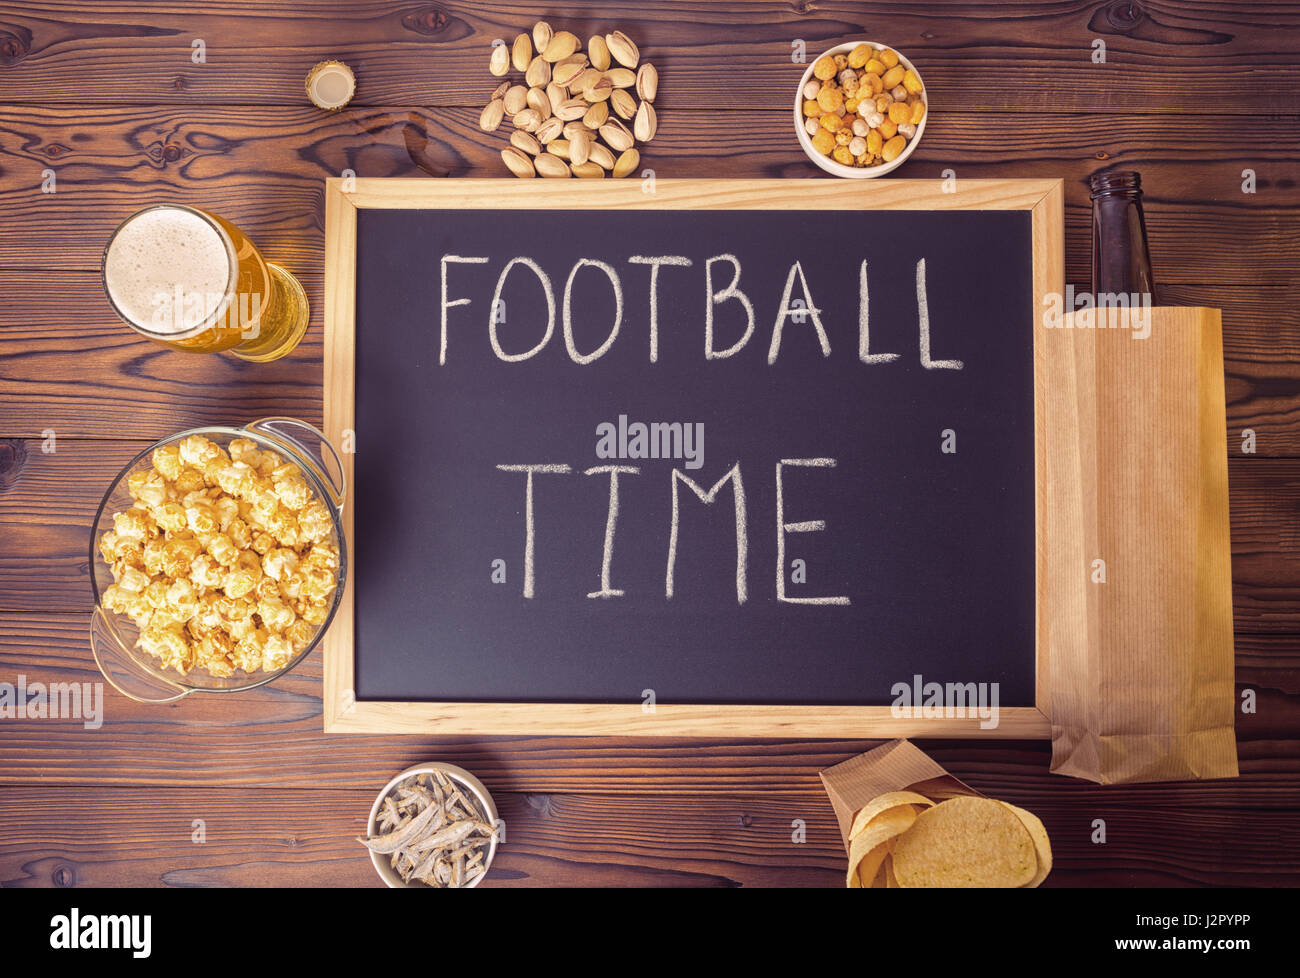 Fußball Fans Einstellung Bierflasche in braunem Papier Tasche, Glas, Chips, Pistazien und Handschrift Text Fußball Zeit über hölzerne Tafel geschrieben Stockfoto